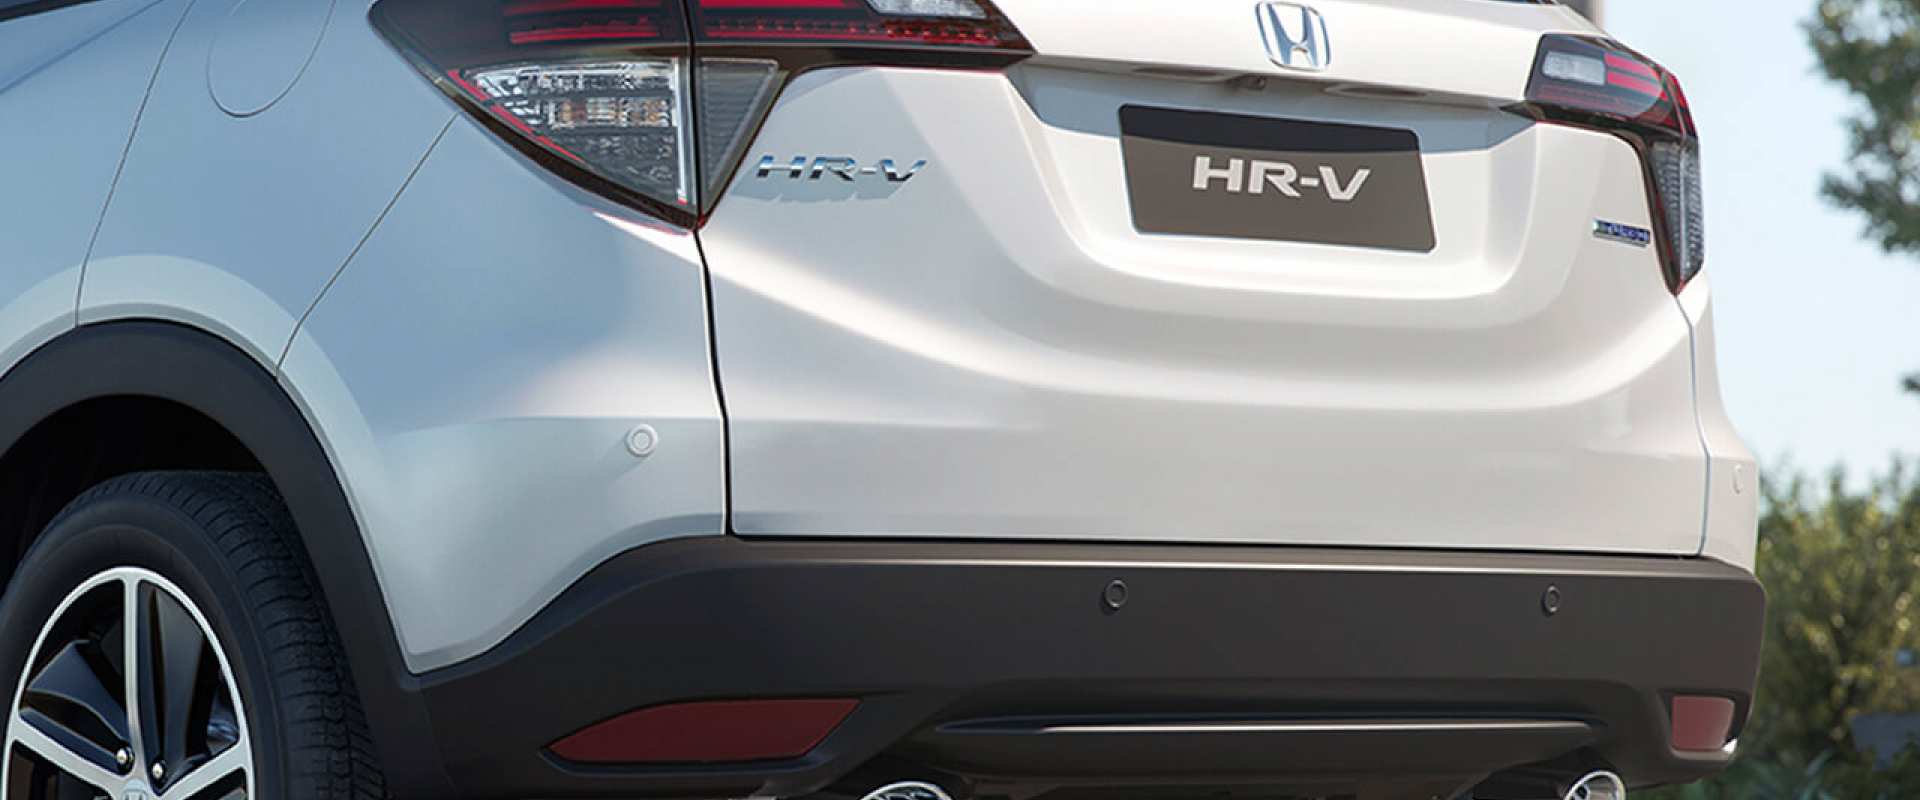 traseira-honda-hr-v Honda HR-V - Preço, Ficha Técnica, Fotos